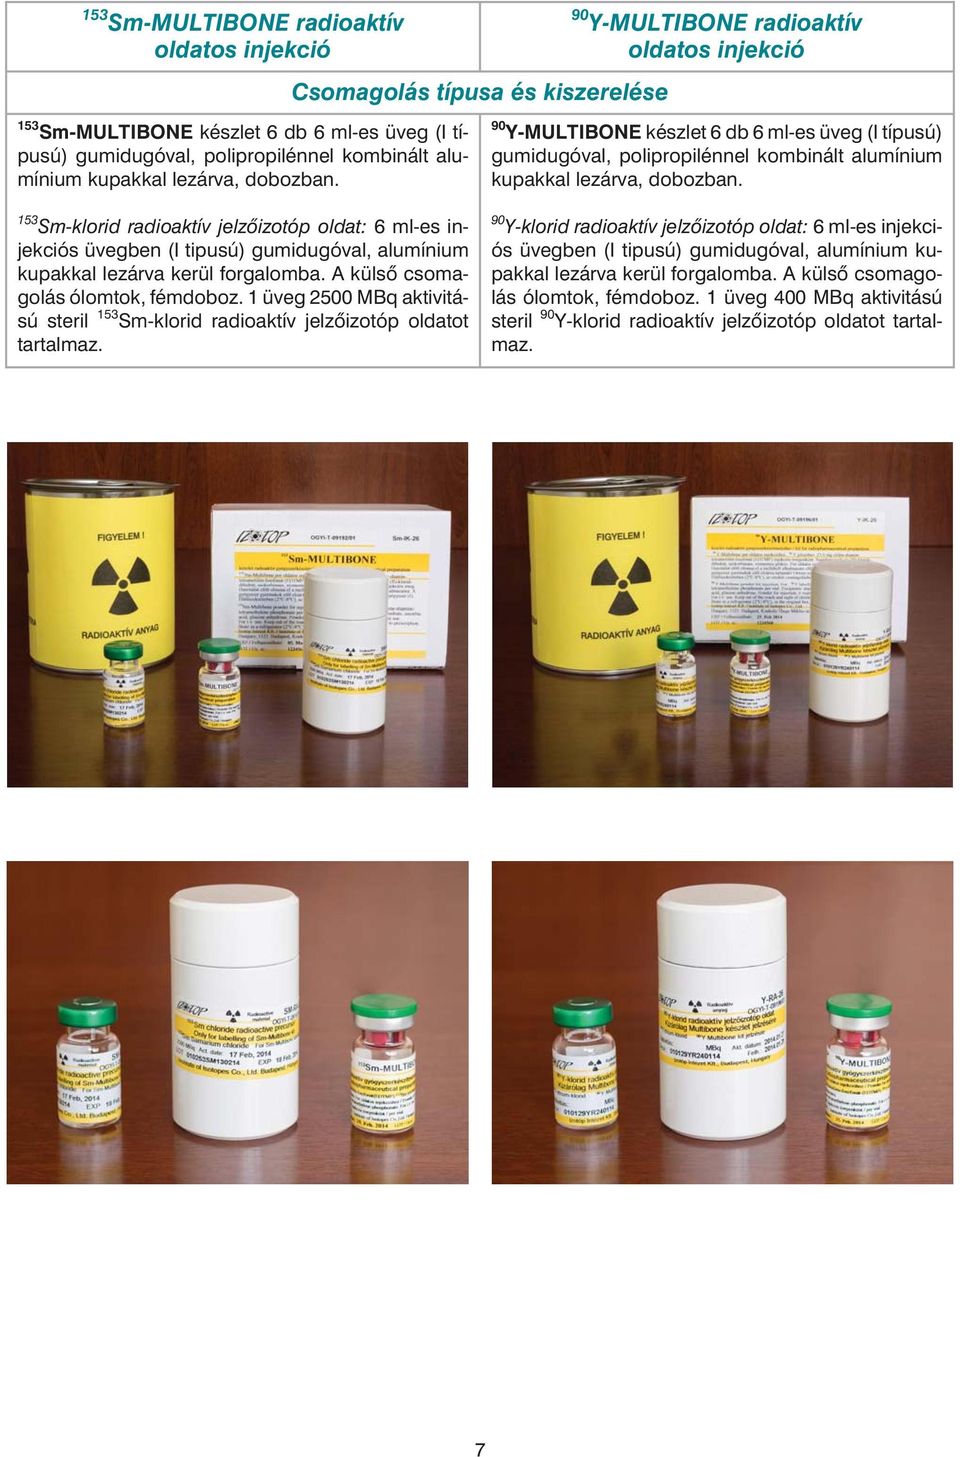 153 Sm-klorid radioaktív jelzõizotóp oldat: 6 ml-es injekciós üvegben (I tipusú) gumidugóval, alumínium kupakkal lezárva kerül forgalomba. A külsõ csomagolás ólomtok, fémdoboz.